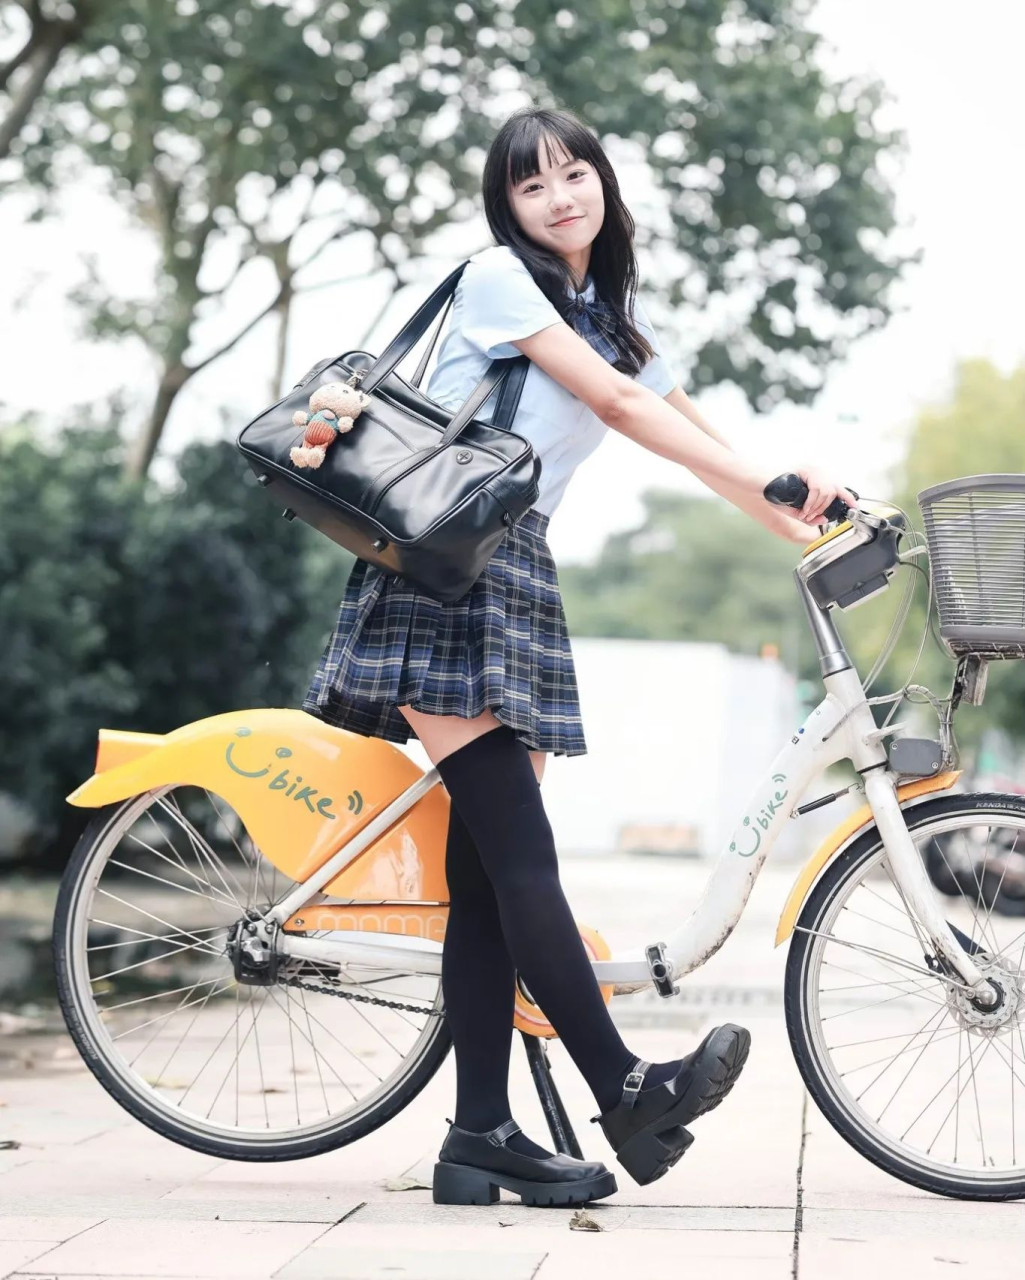 學生服搭配腳踏車